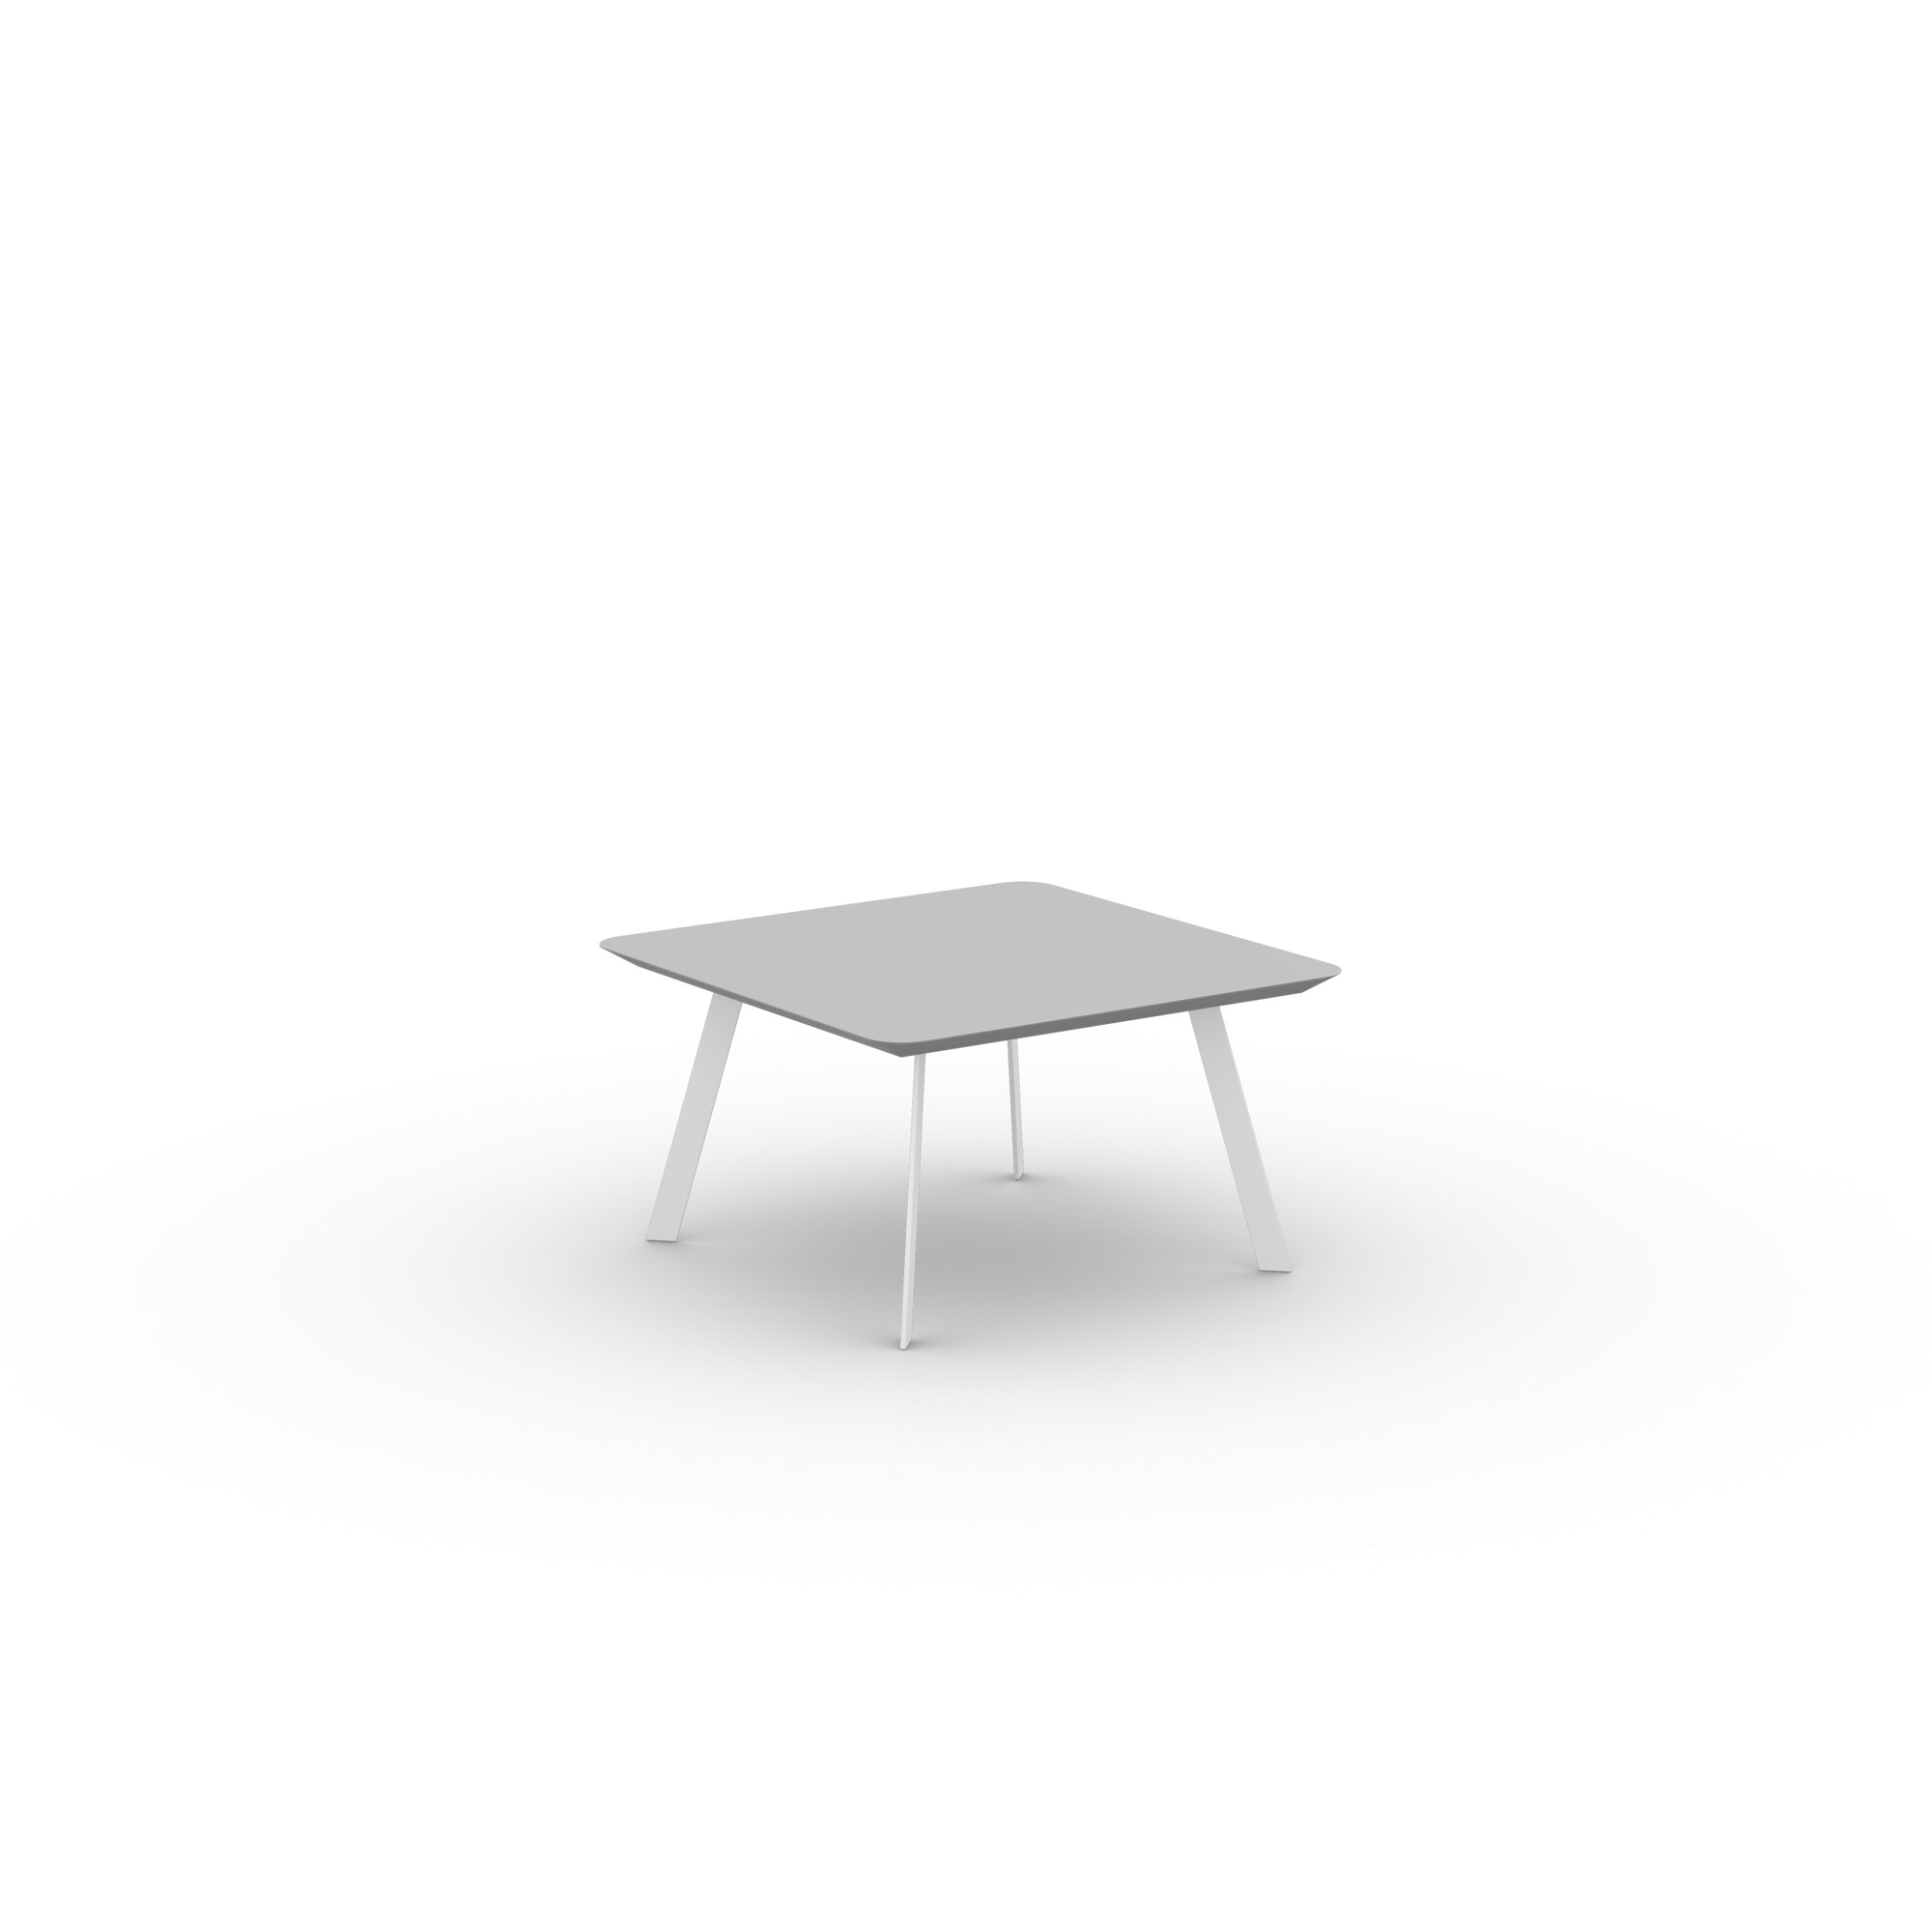 Design Coffee Table | New Co Coffee Table 70 Square White | HPL Fenix grigio efeso | Studio HENK| 